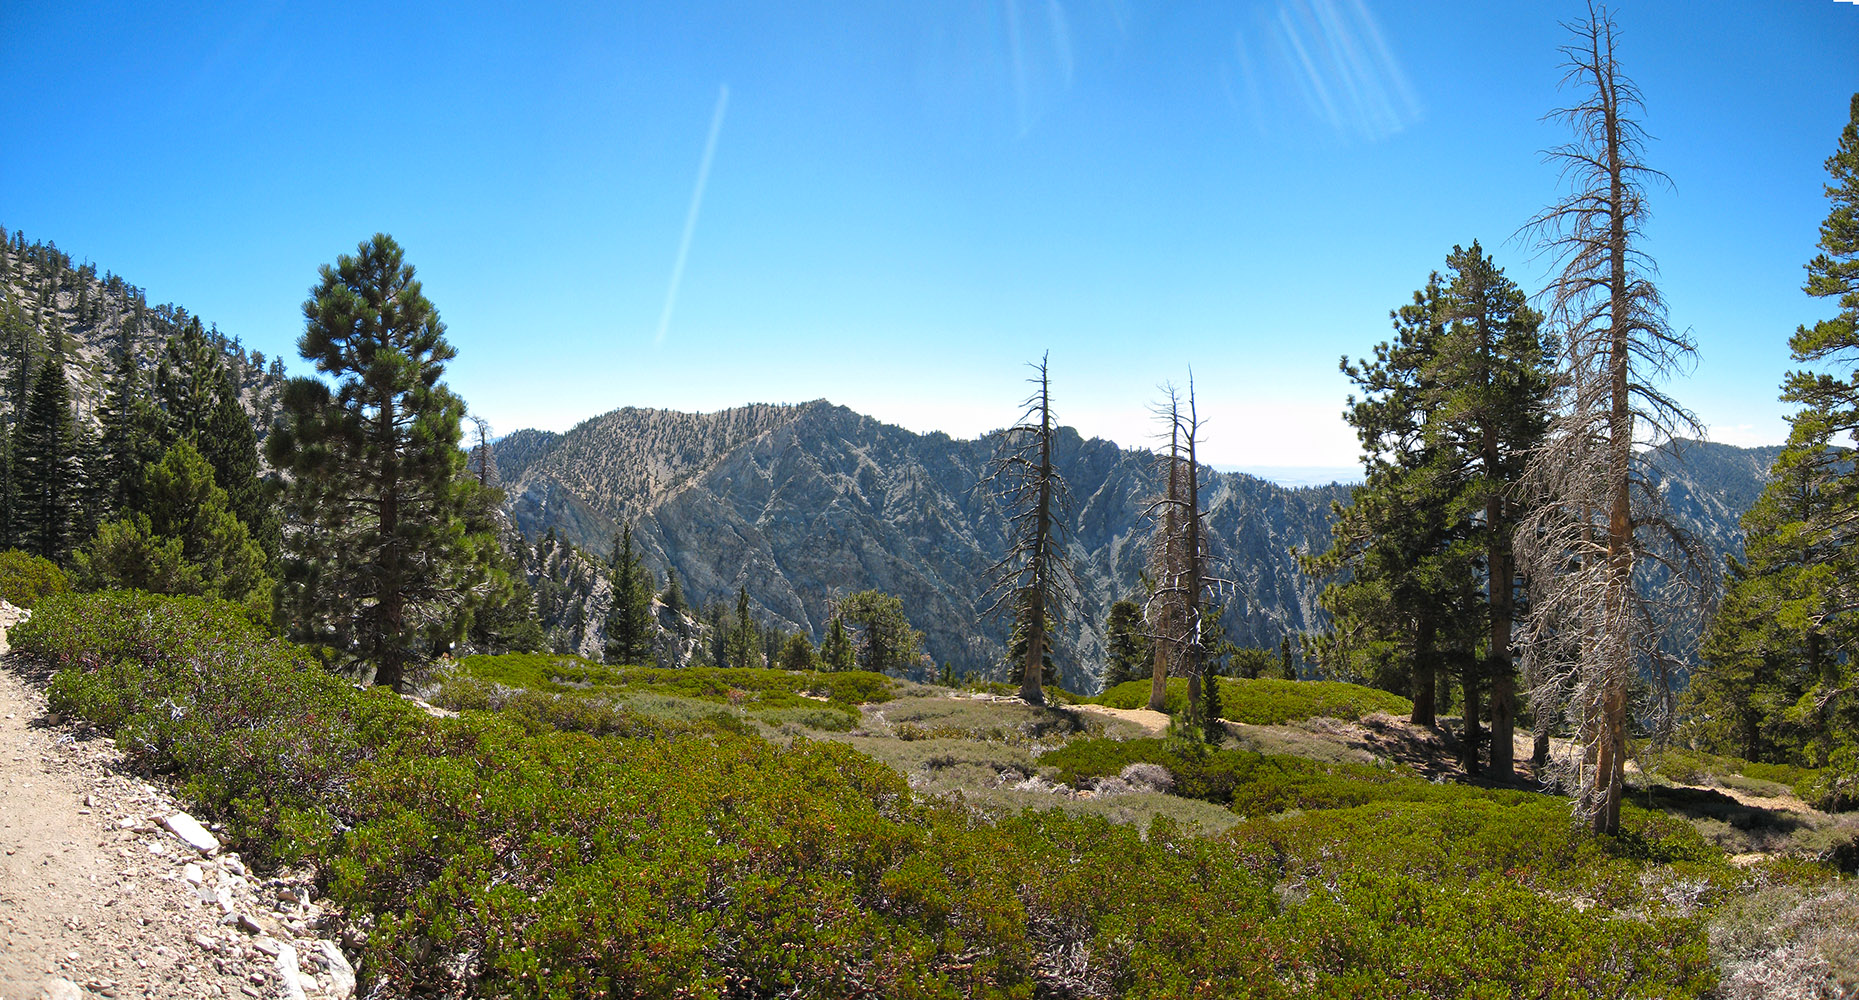 Galena Peak across the Valley